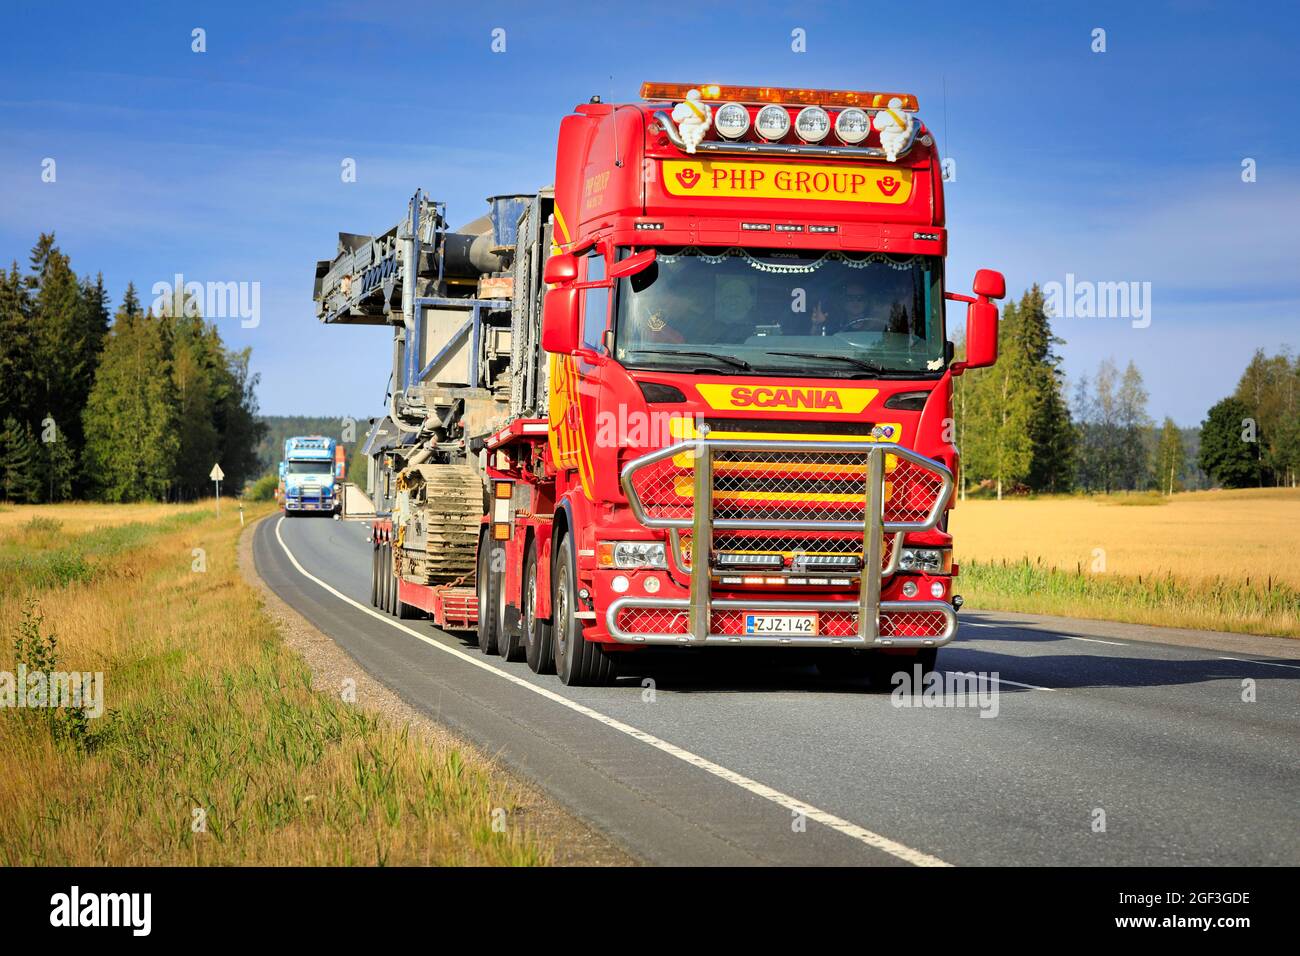 Scania Truck de PHP Group transporte des équipements de concassage et de criblage comme charge surdimensionnée, un autre transport suit. Urjala, Finlande. 12 août 2021 Banque D'Images